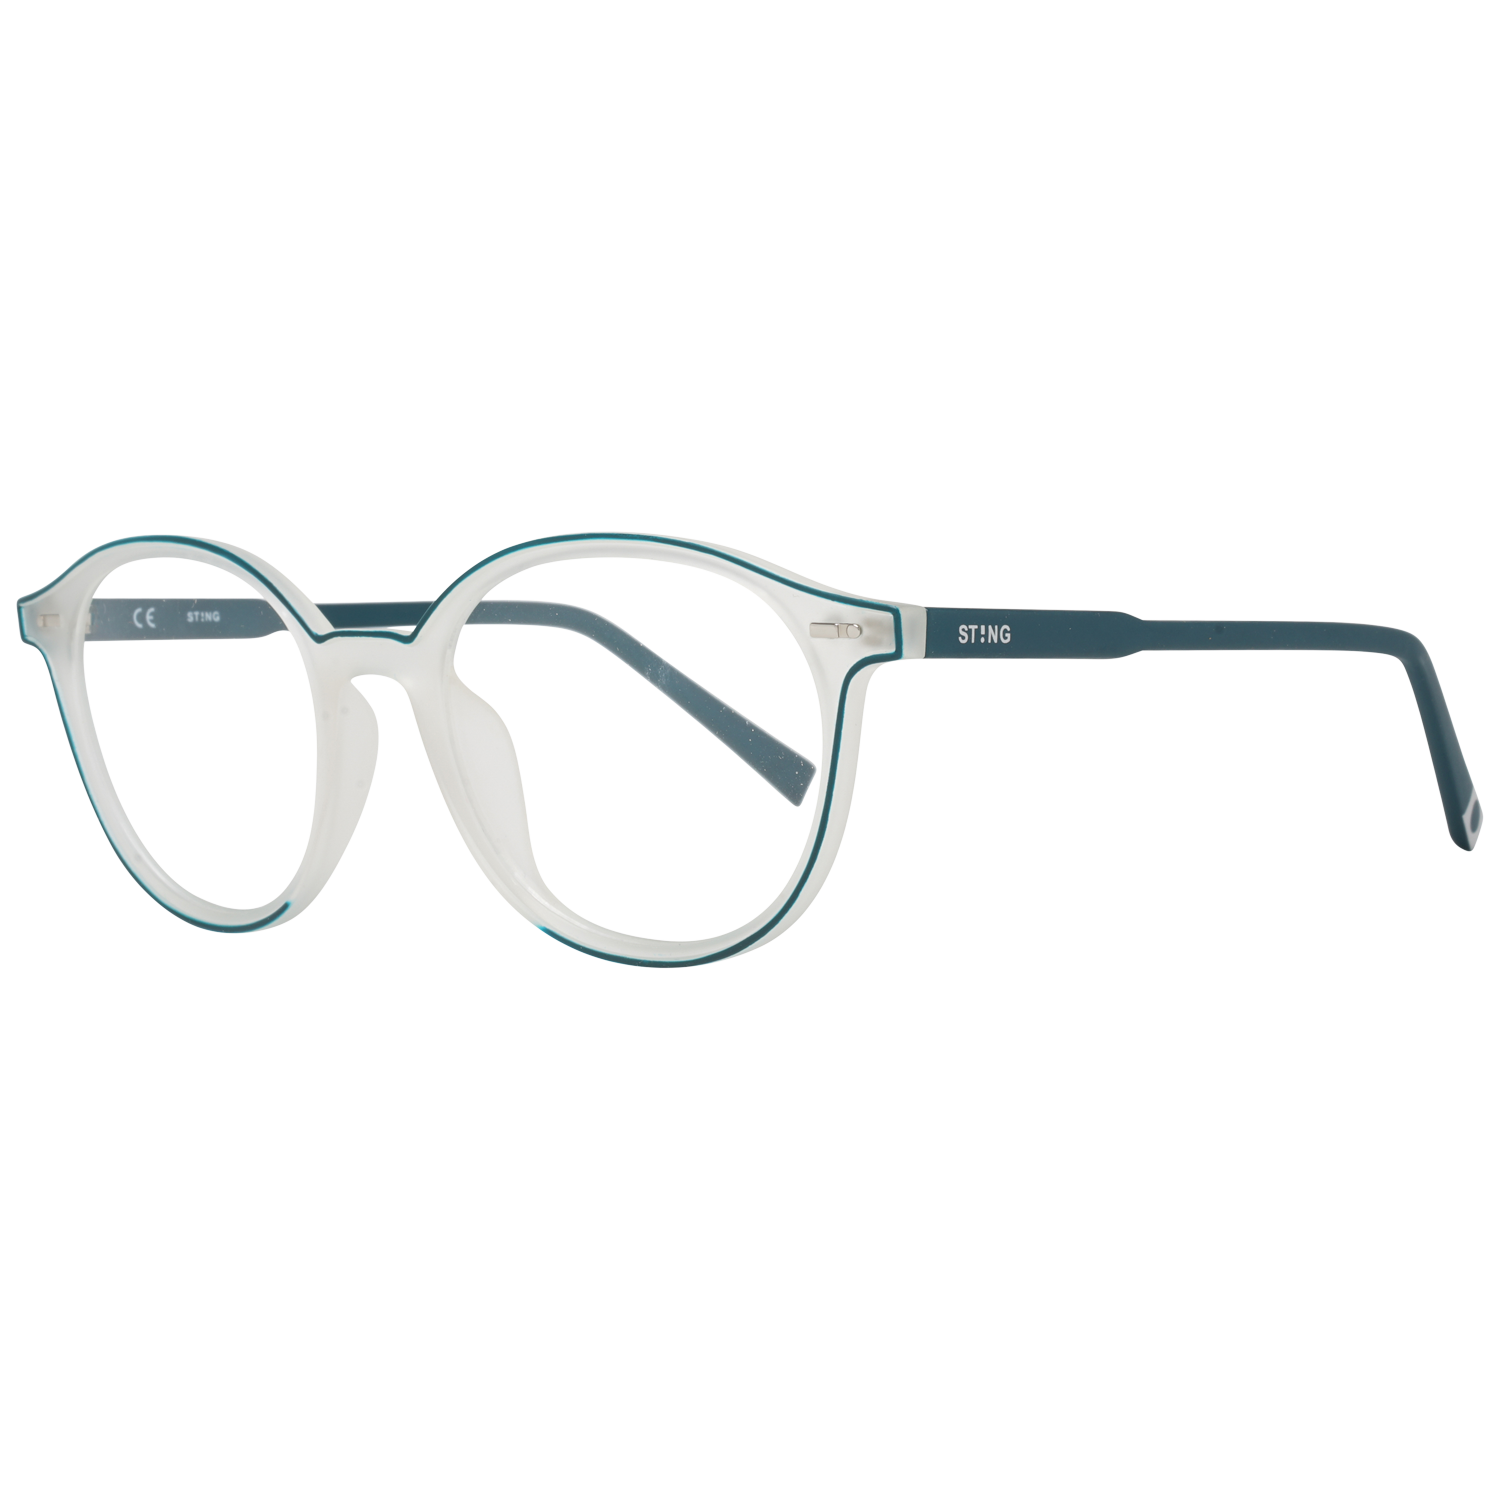 Sting Frames Sting Optical Frame VST086 7CPM 51 Eyeglasses Eyewear UK USA Australia 